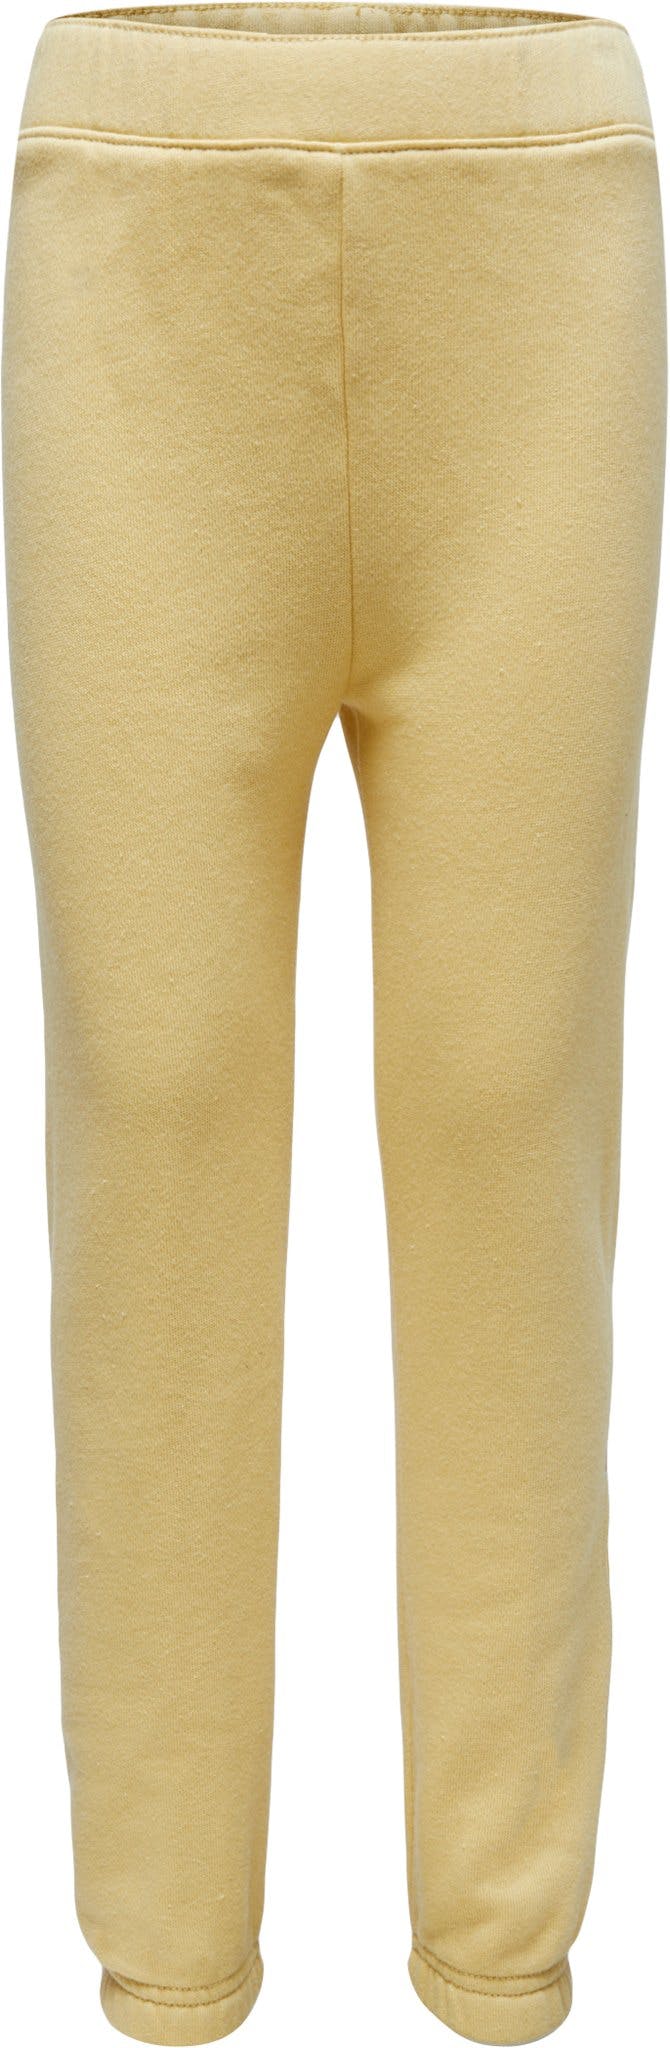 Numéro de l'image de la galerie de produits 1 pour le produit Pantalon de survêtement Radically Happy - Jeune